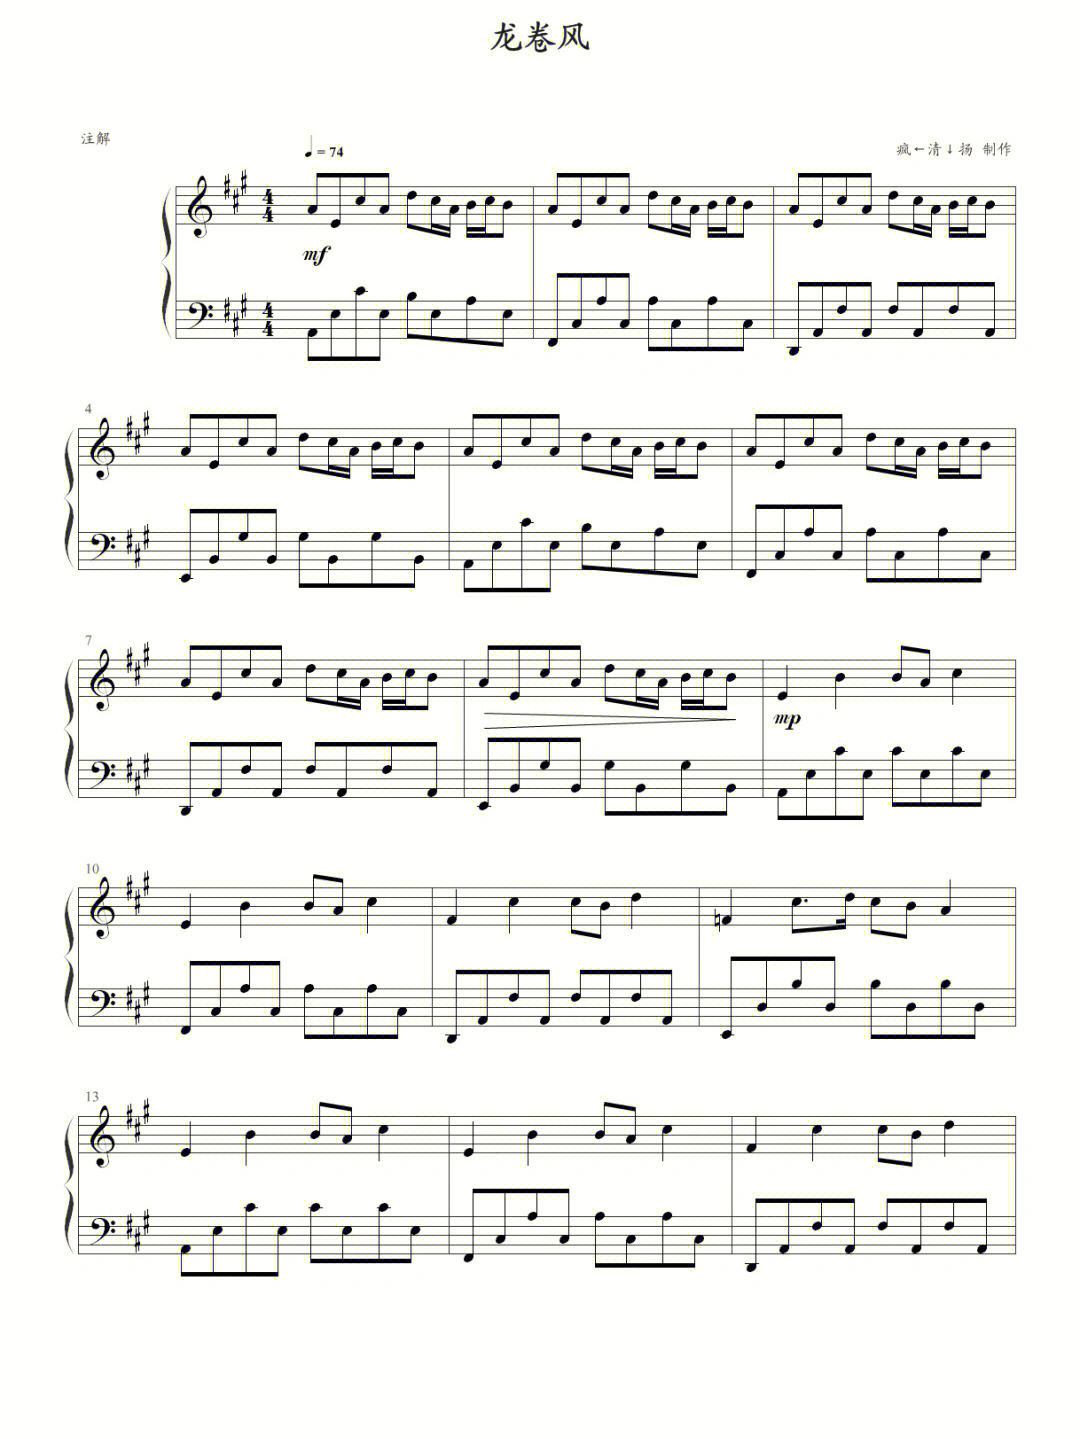 钢琴谱龙卷风四级曲谱